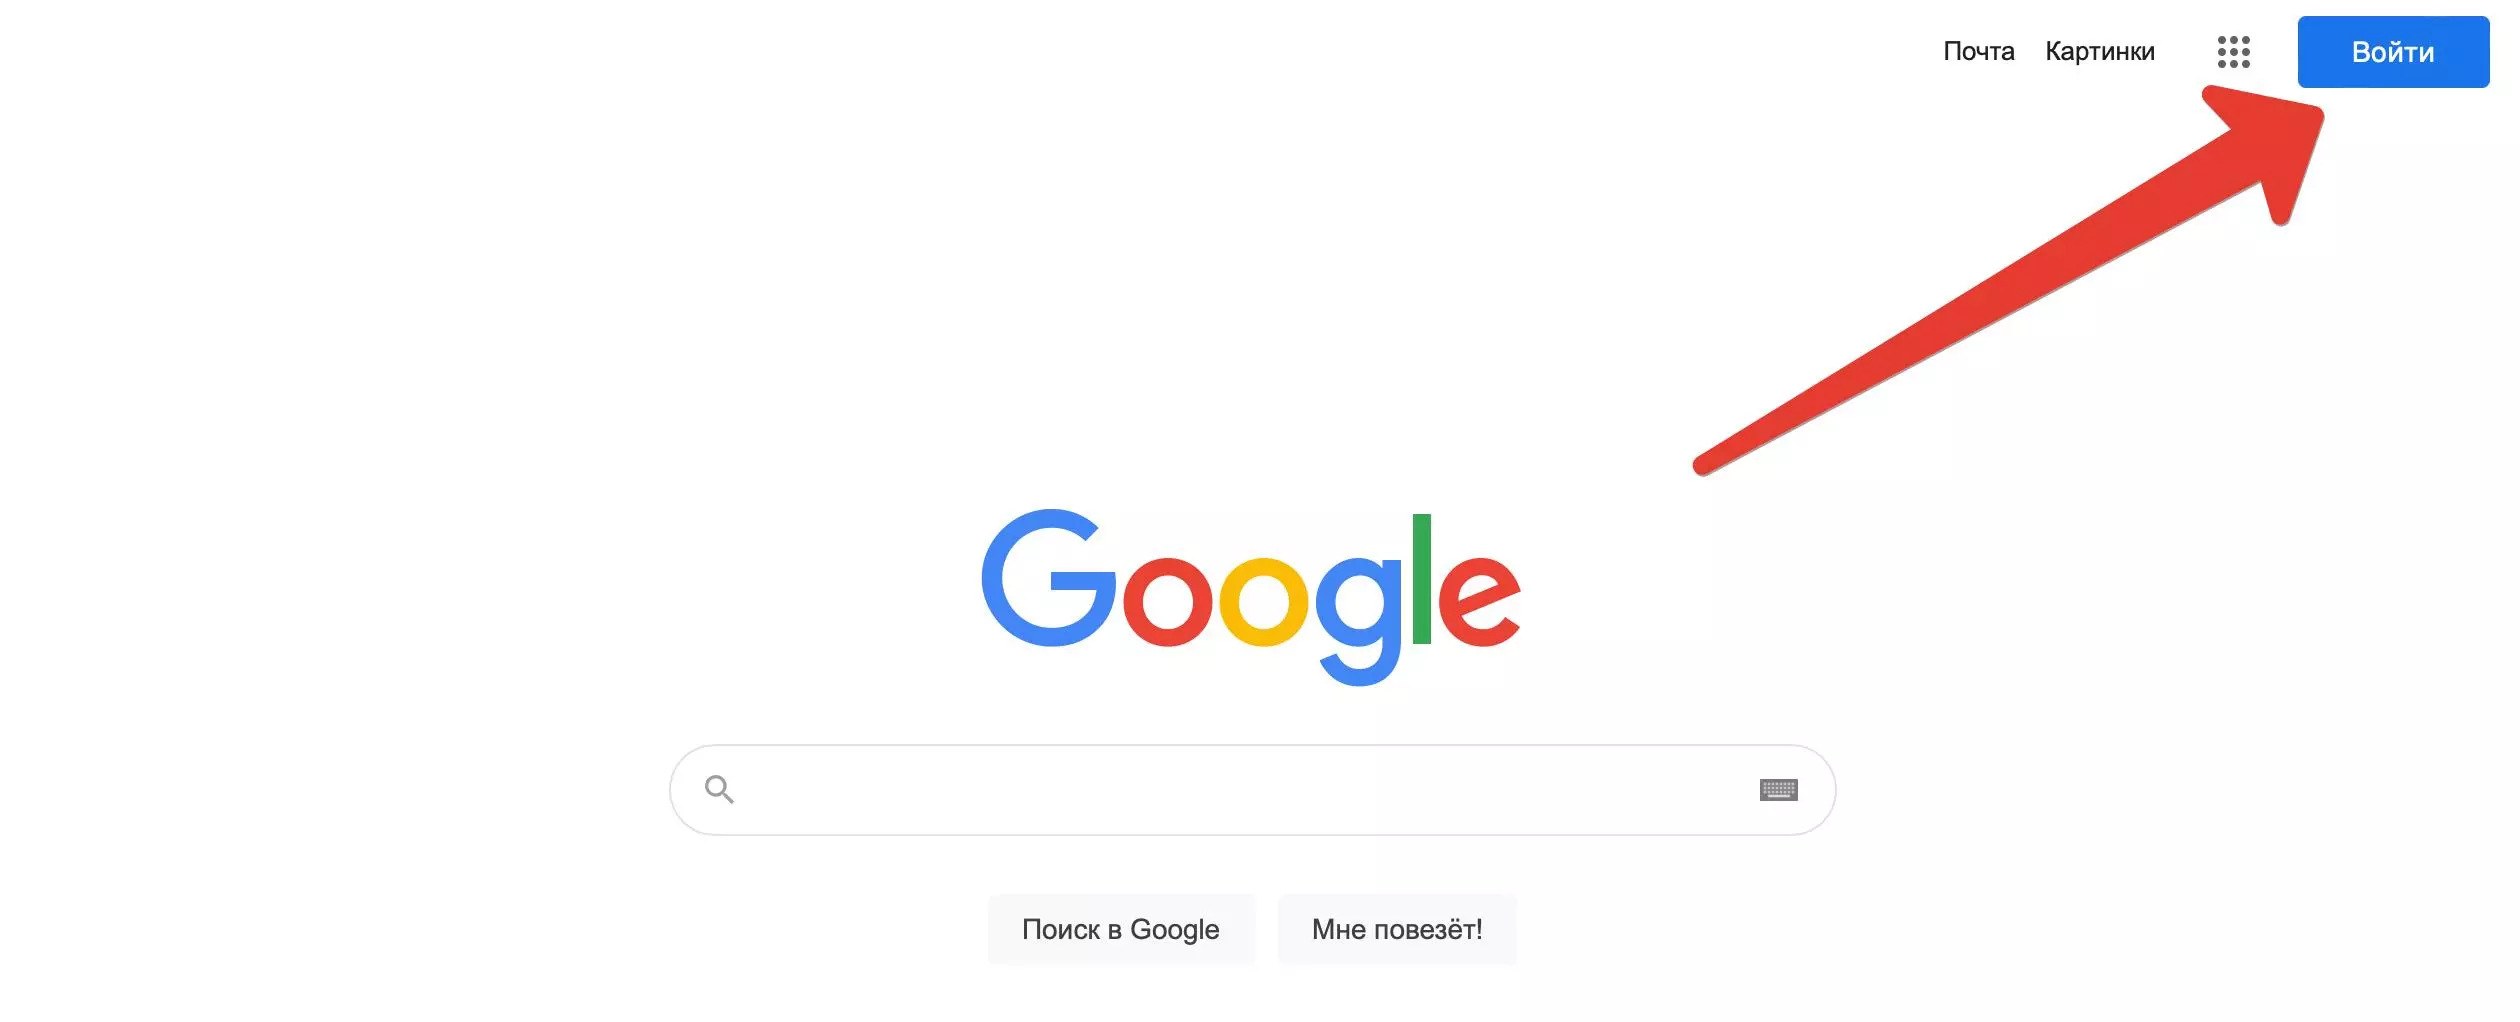 Как создать объявление в поиске картинок Google